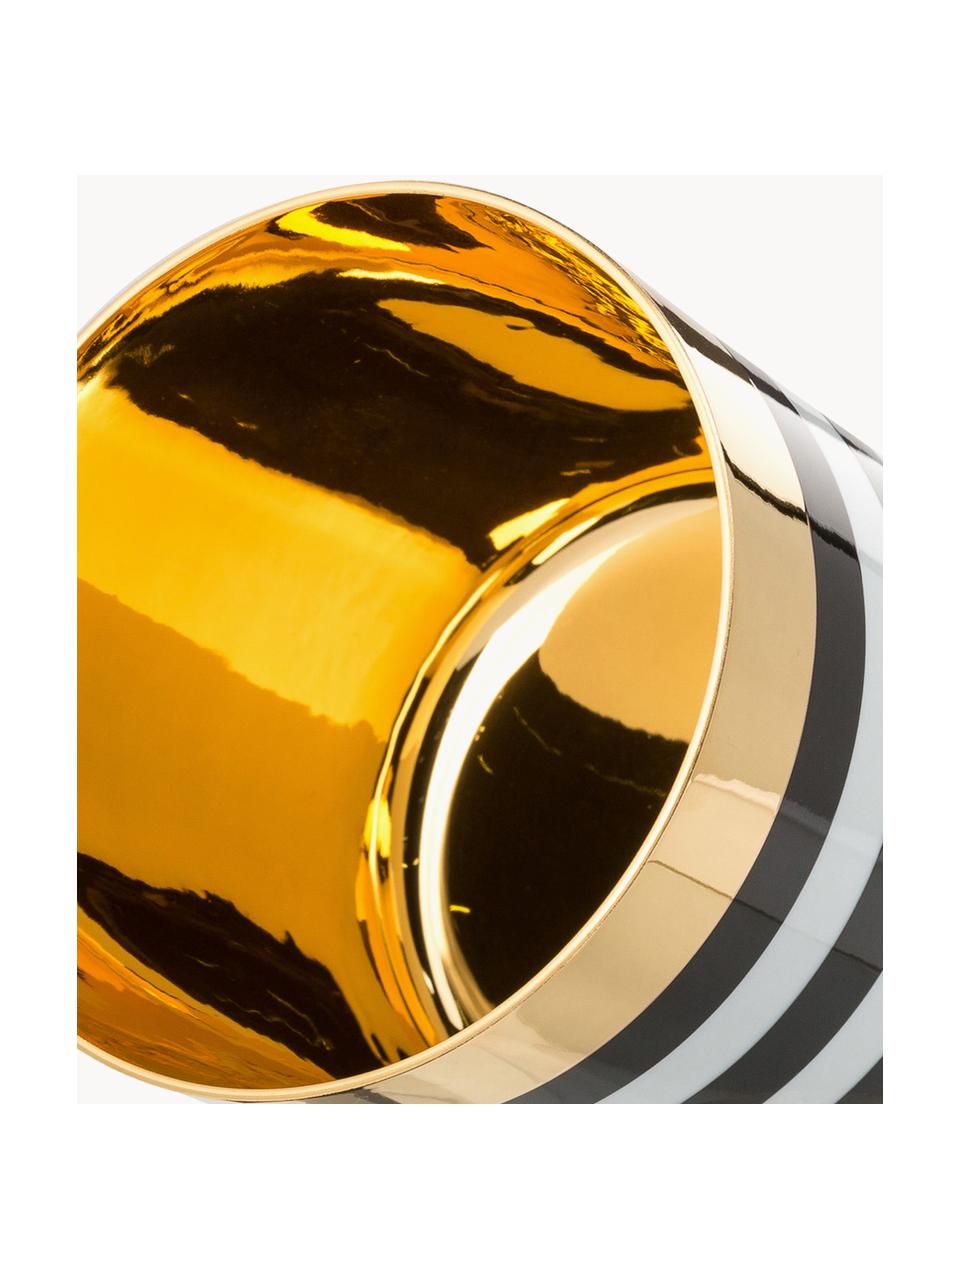 Vergoldeter Champagnerbecher Sip of Gold aus Porzellan, Rand: Vergoldet, Mehrfarbig, Ø 9 x H 7 cm, 300 ml